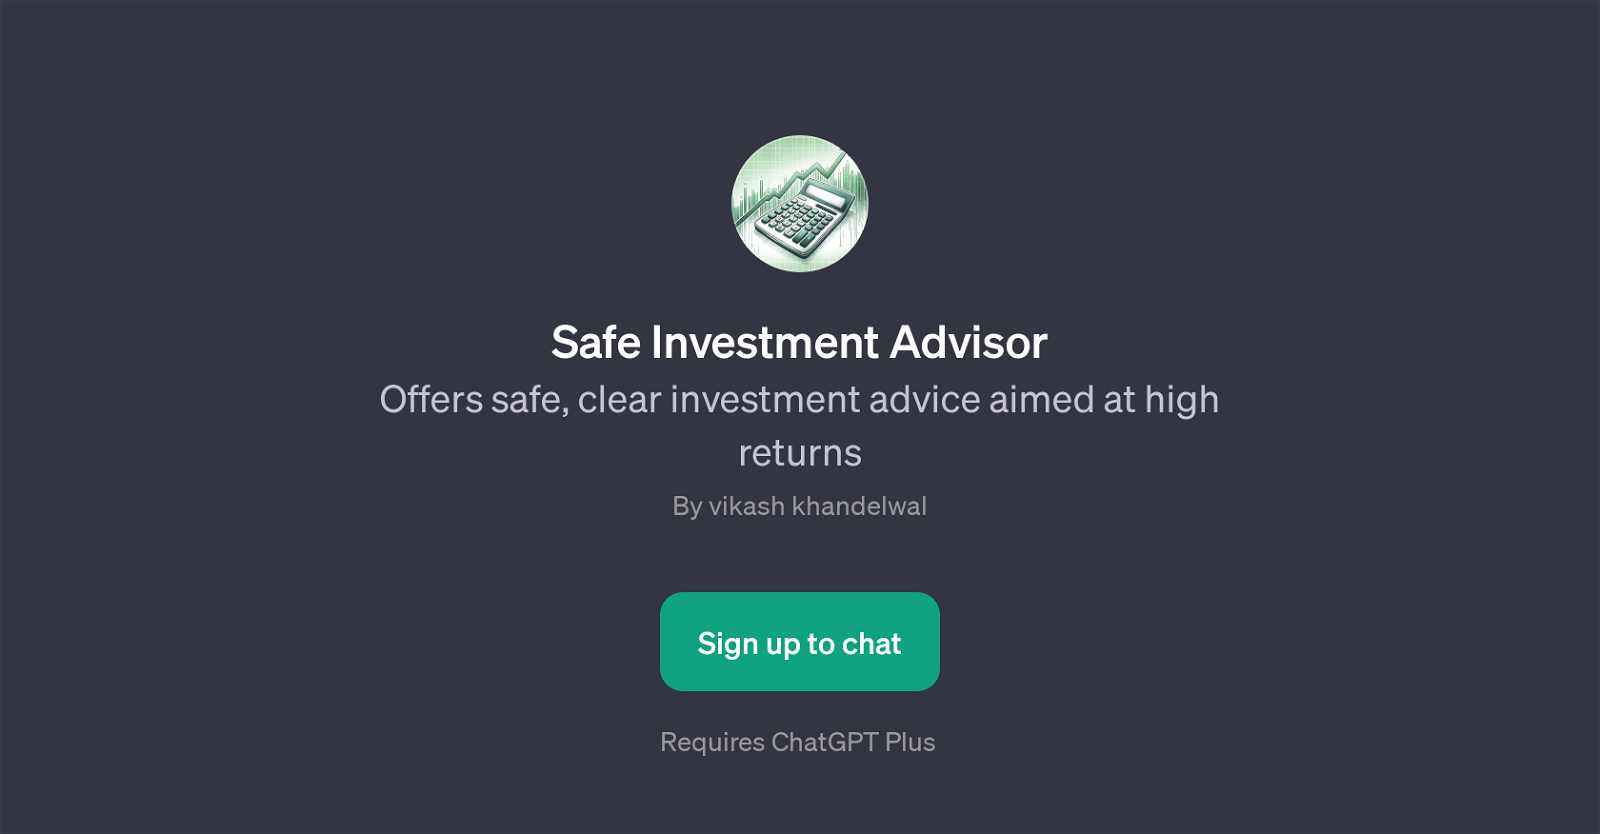 Safe Investment Advisor website